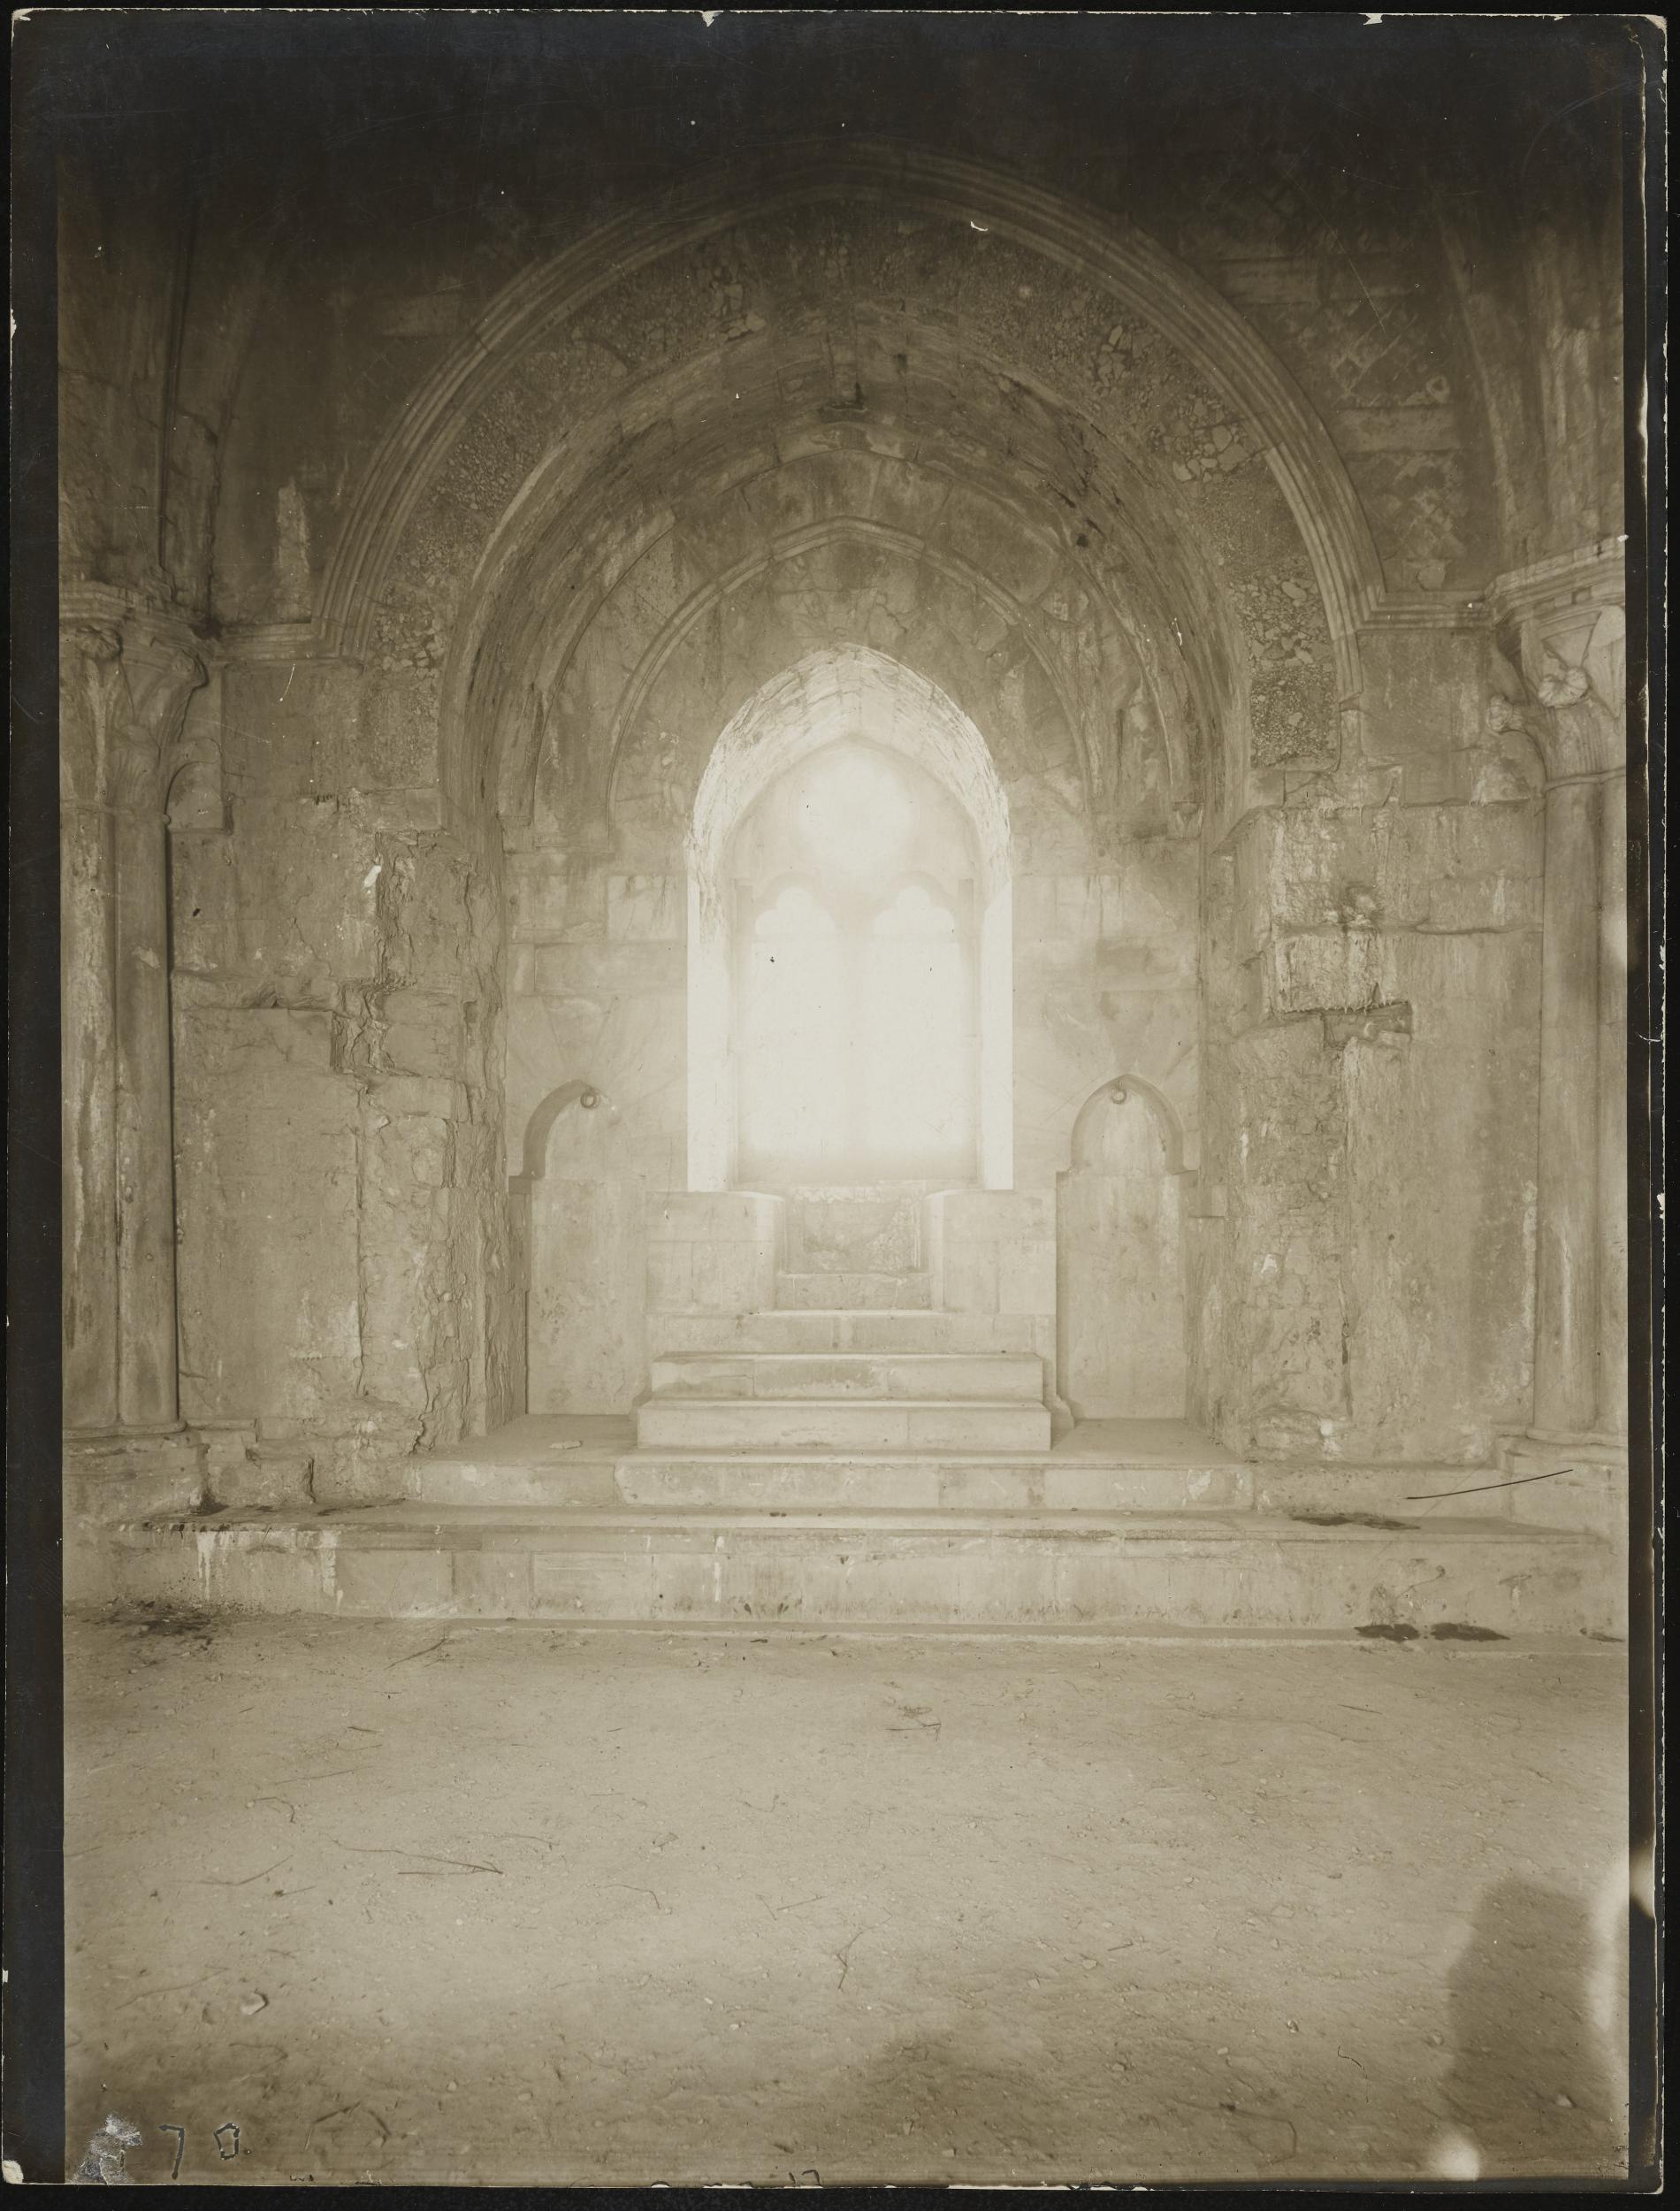 Fotografo non identificato, Andria, Castel del Monte - Sala del piano superiore, bifore, 1951-2000, gelatina ai sali d'argento/carta, MPI6016734